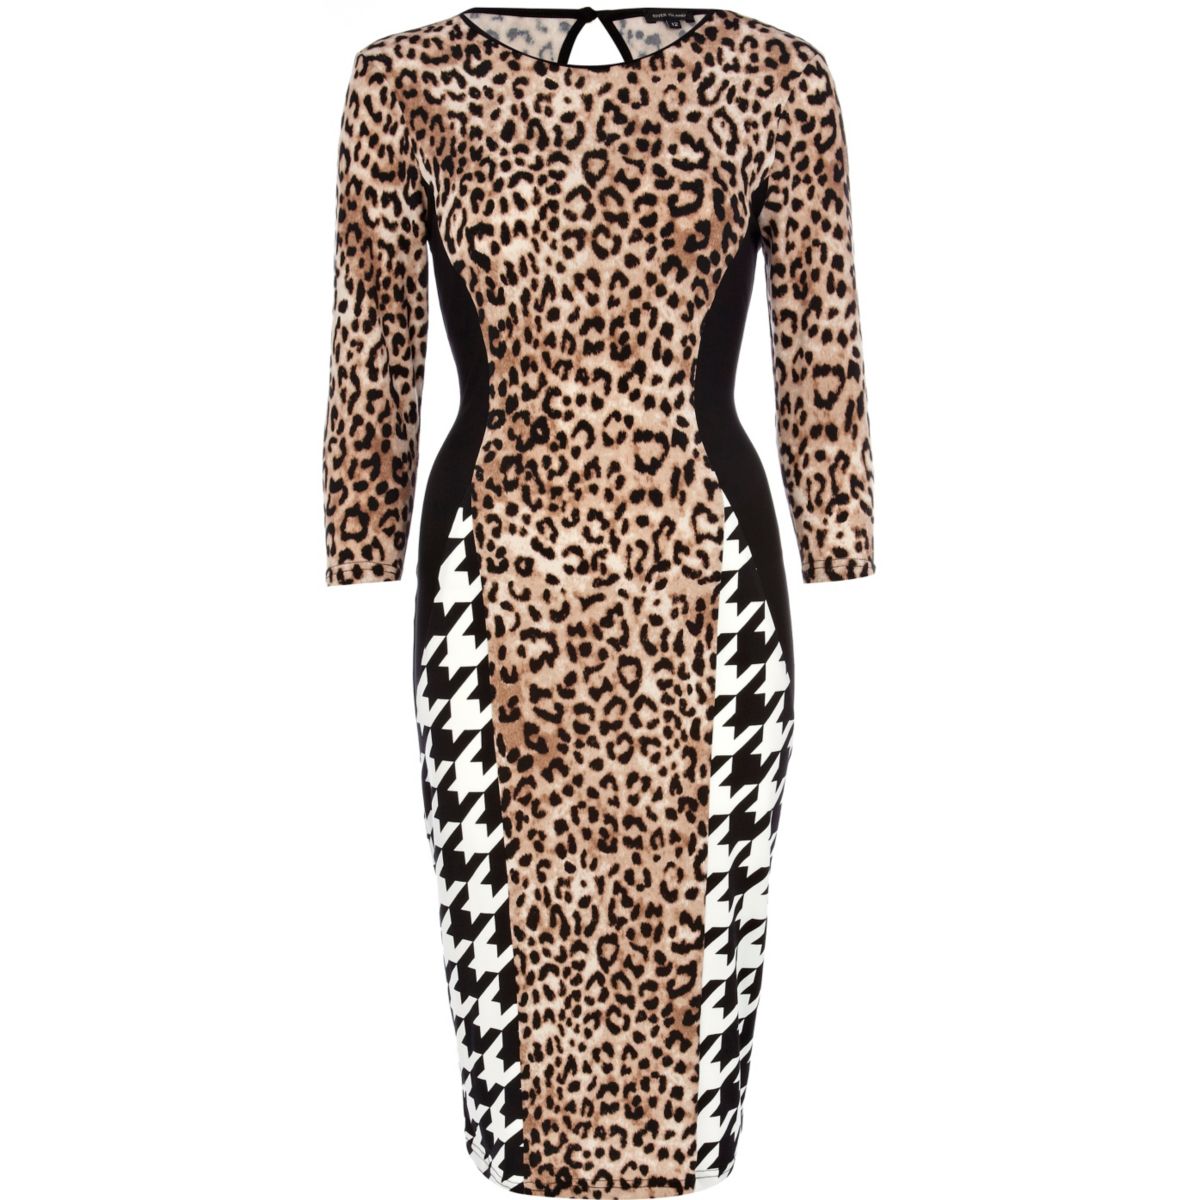 Beige tartan and leopard print bodycon dress - Dresses - Sale - women